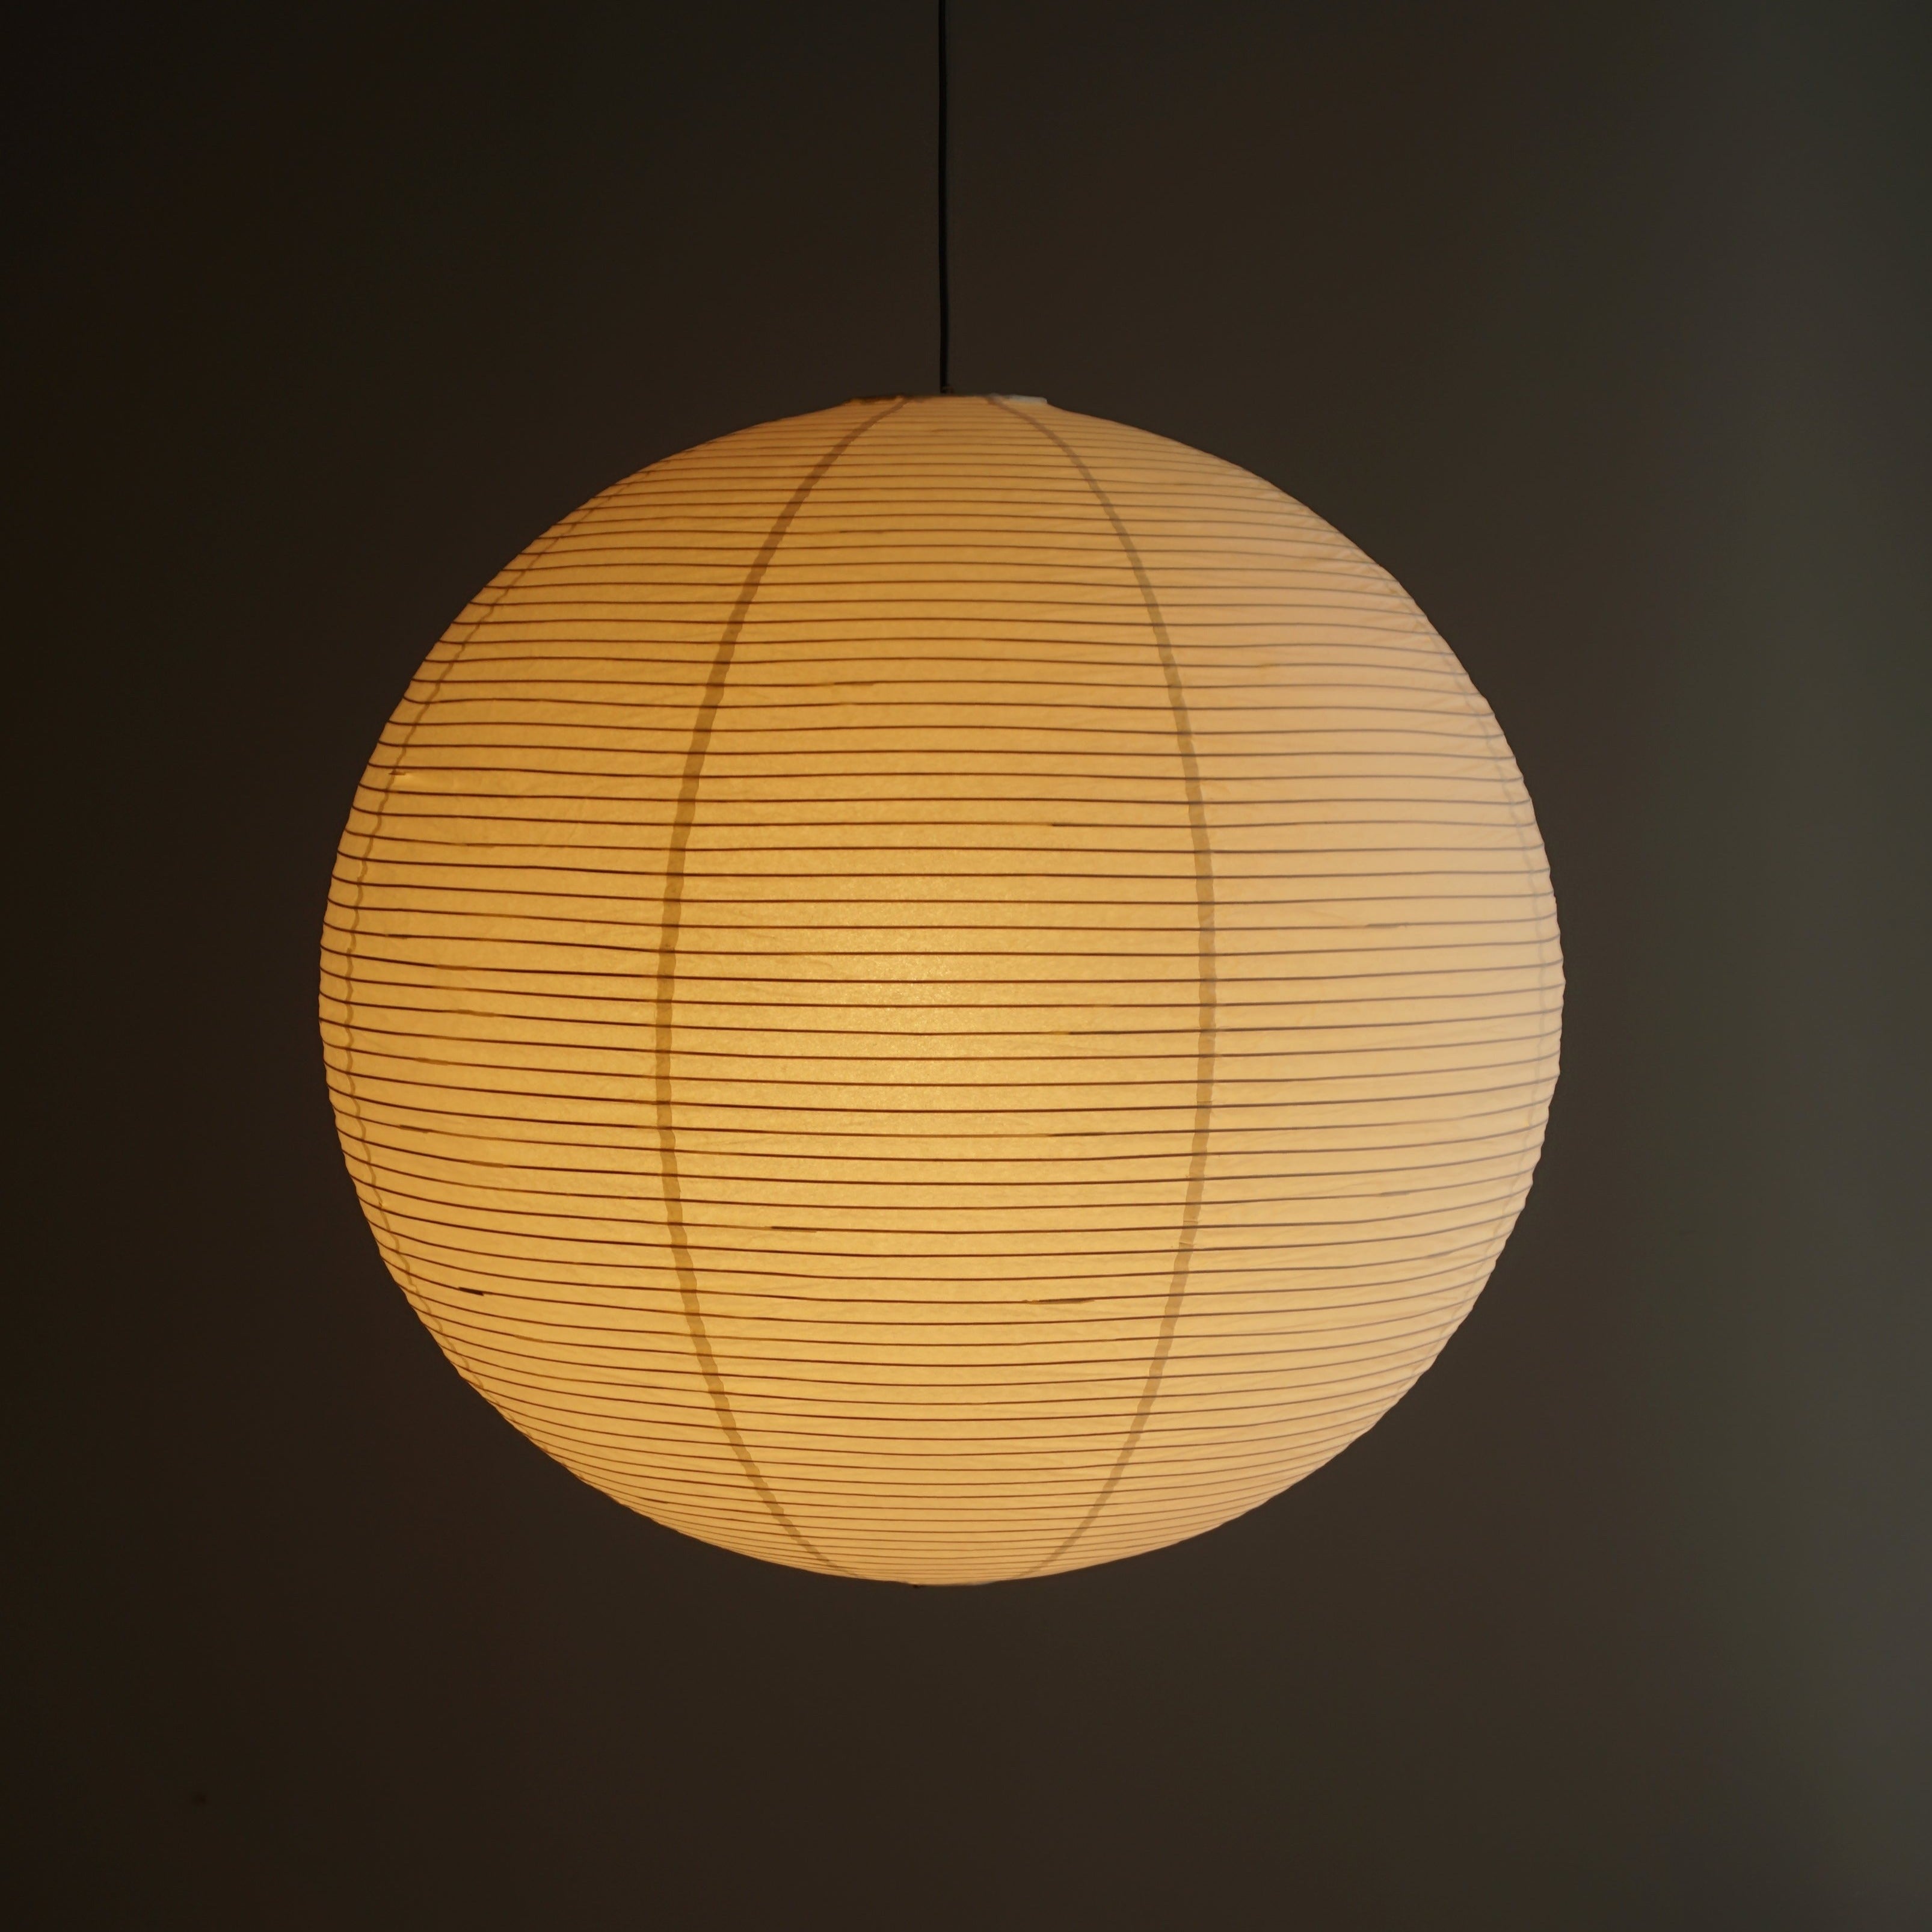 Washi Paper Akari Ceiling Pendant Lamp